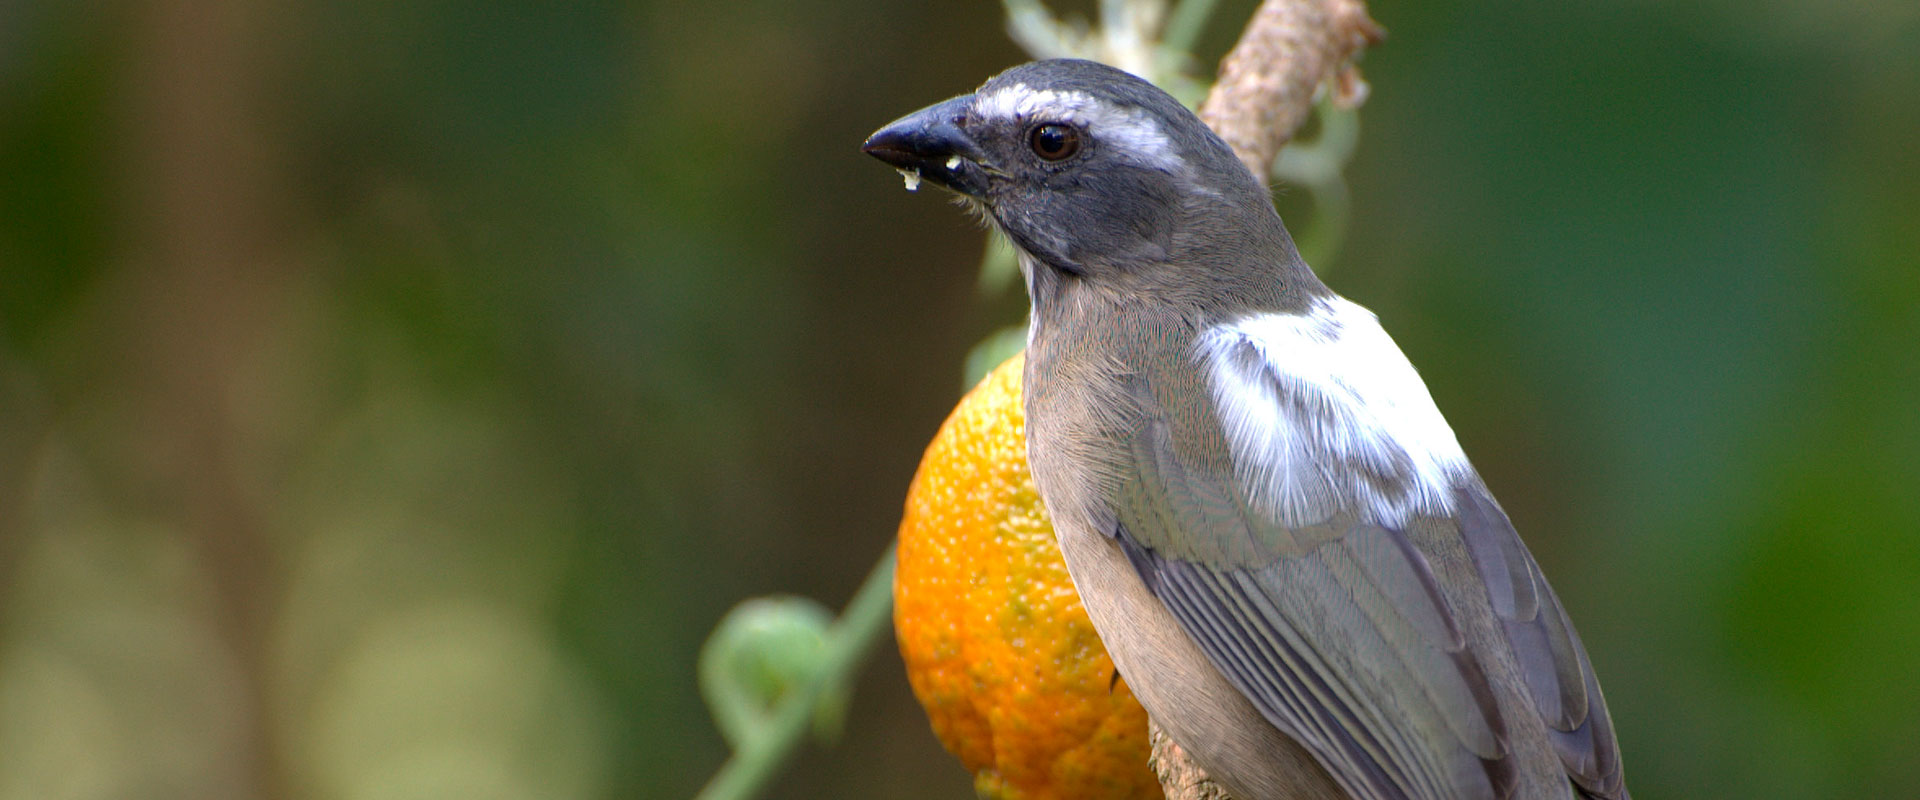 ACPSI - Associação dos Criadores de Pássaros Silvestres de Ituporanga.